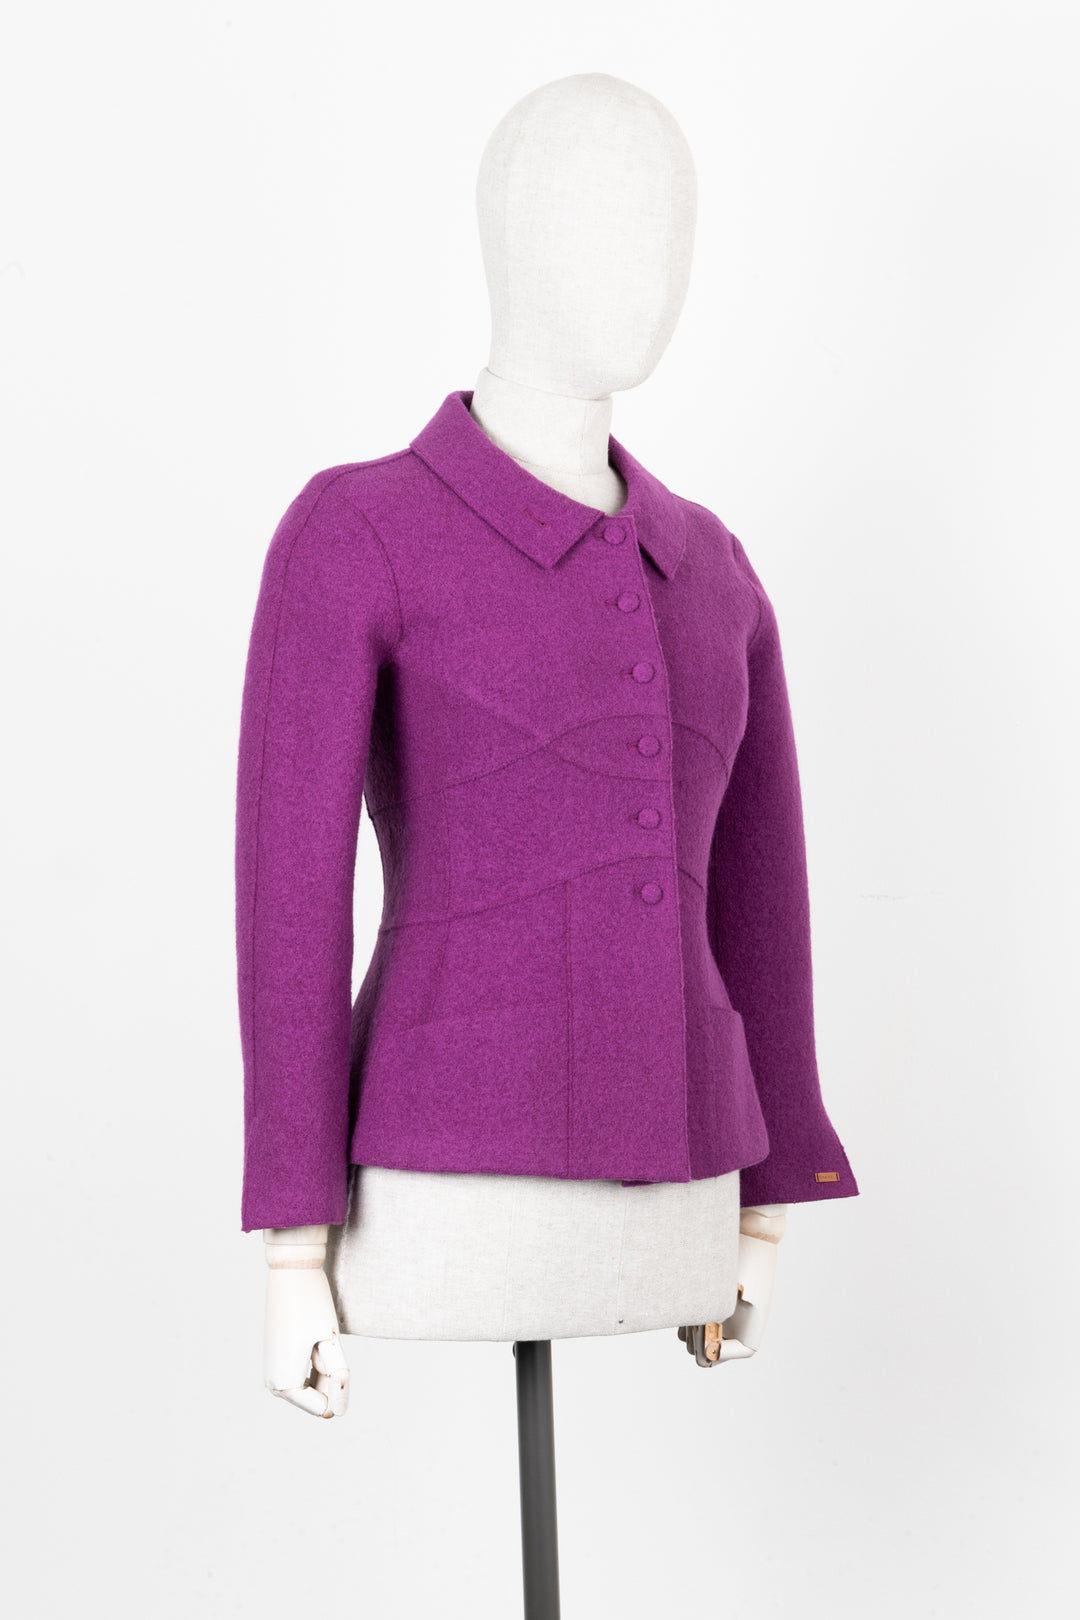 CHANEL 1999 Jacket Purple Wool